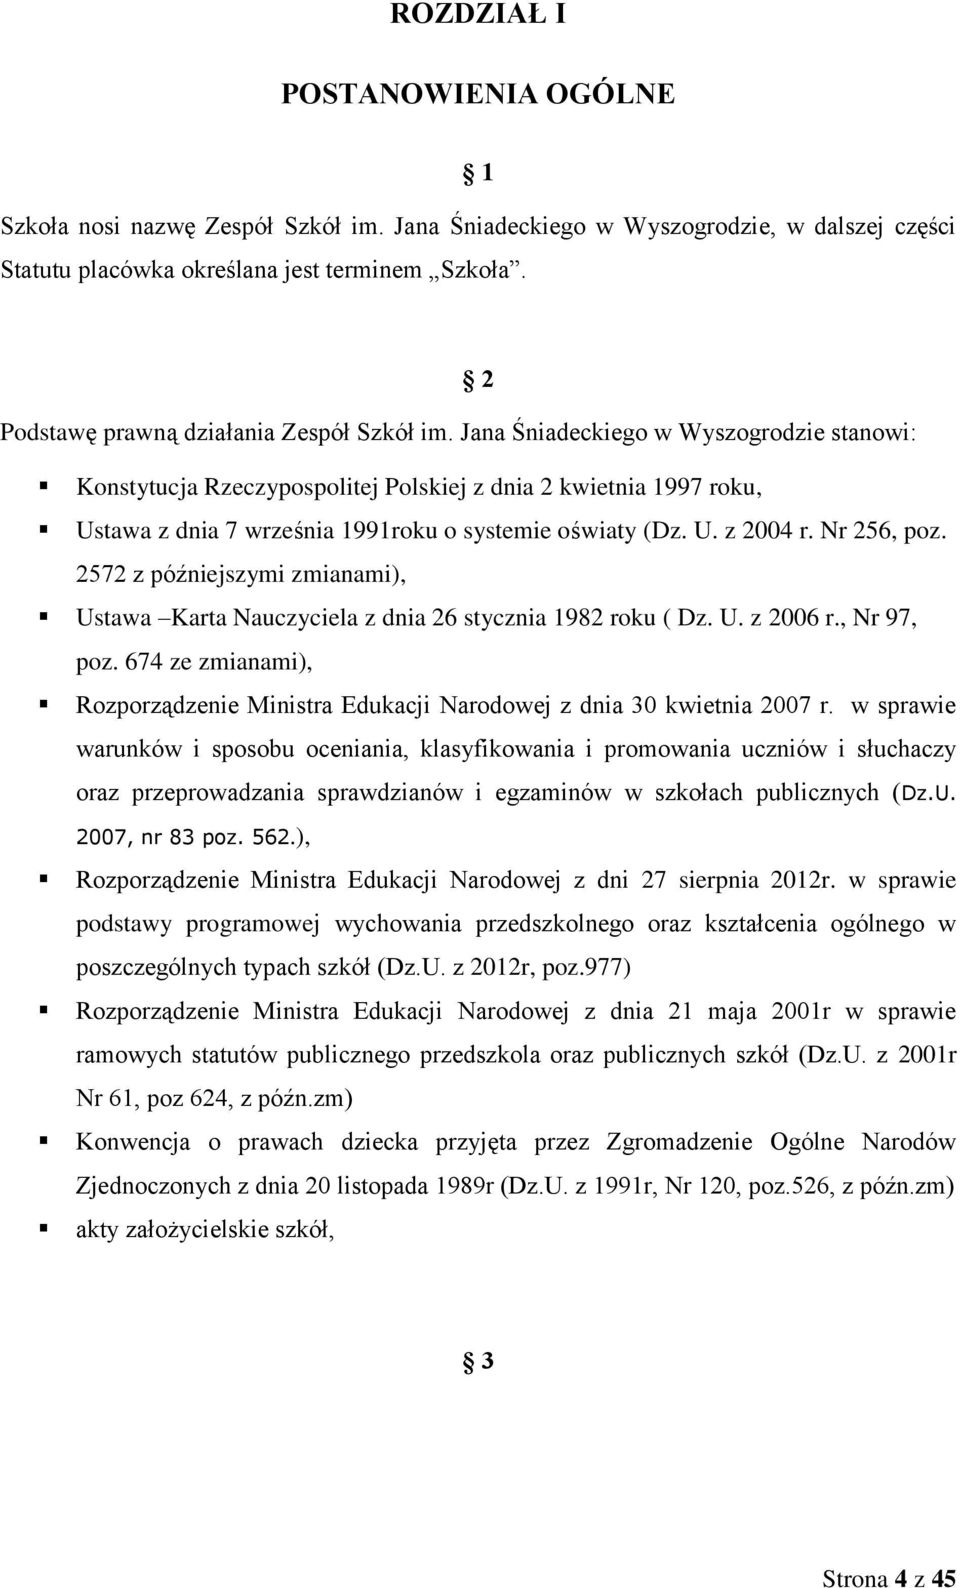 Jana Śniadeckiego w Wyszogrodzie stanowi: Konstytucja Rzeczypospolitej Polskiej z dnia 2 kwietnia 1997 roku, Ustawa z dnia 7 września 1991roku o systemie oświaty (Dz. U. z 2004 r. Nr 256, poz.